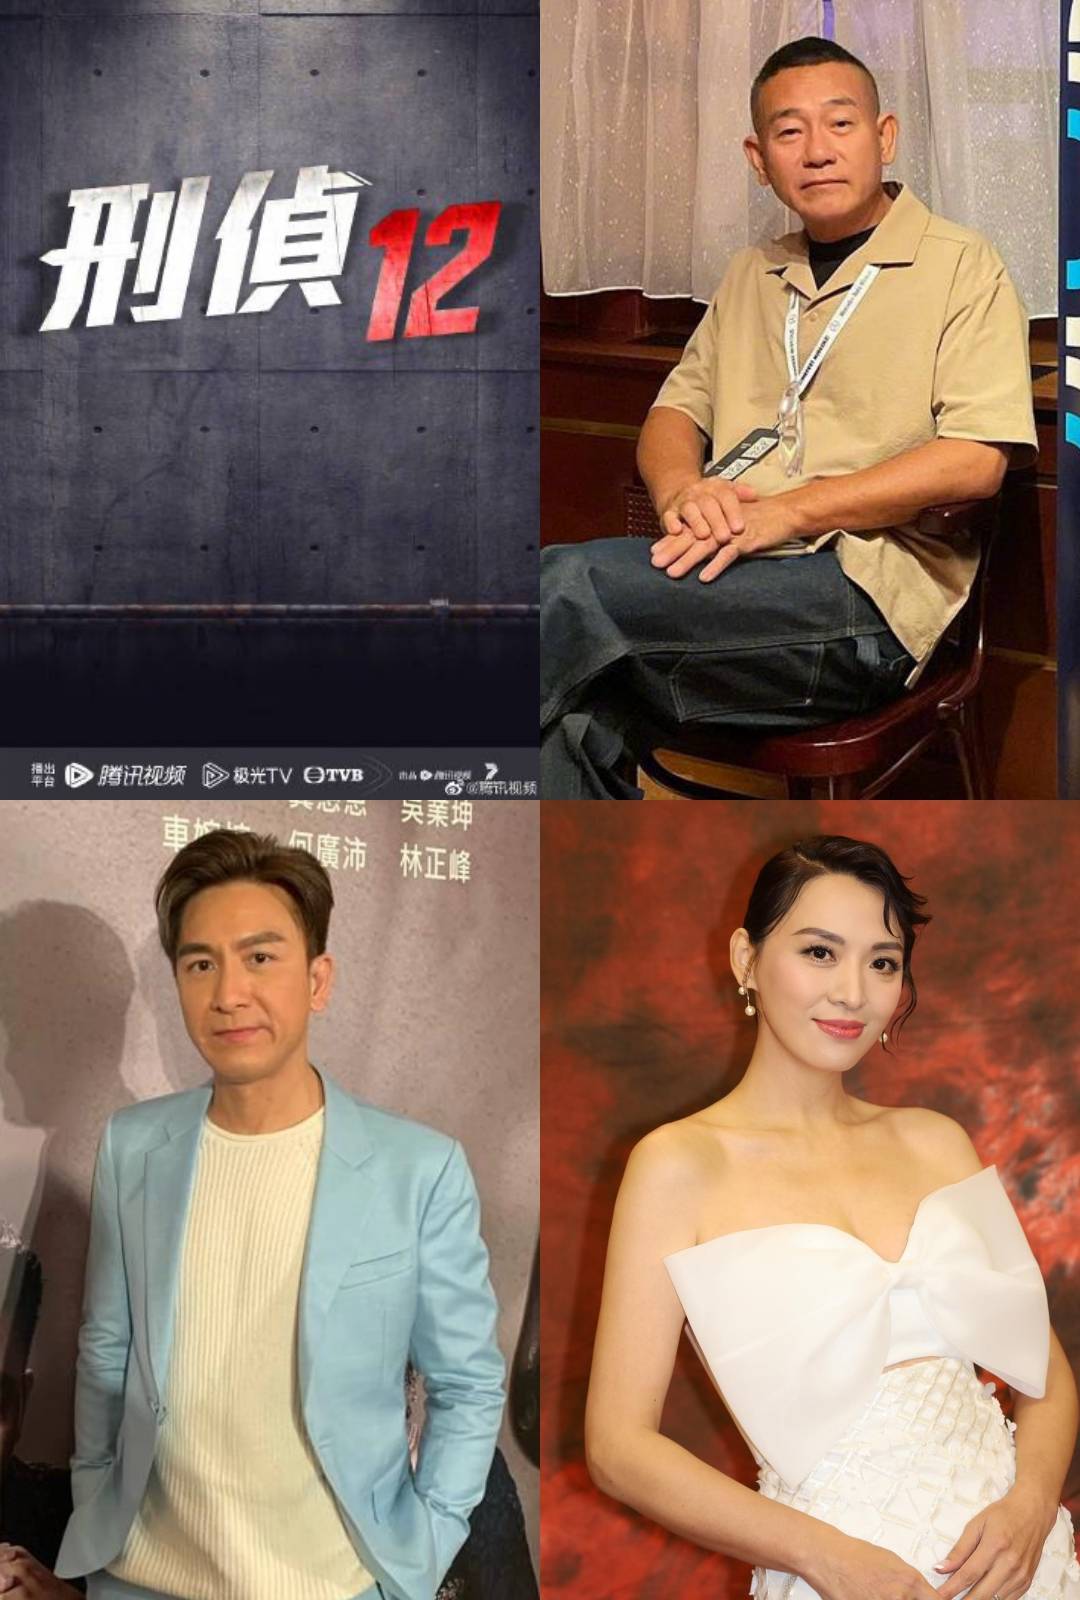 刑侦12 有消息指《刑侦12》主角将有林保怡、马国明和陈炜。